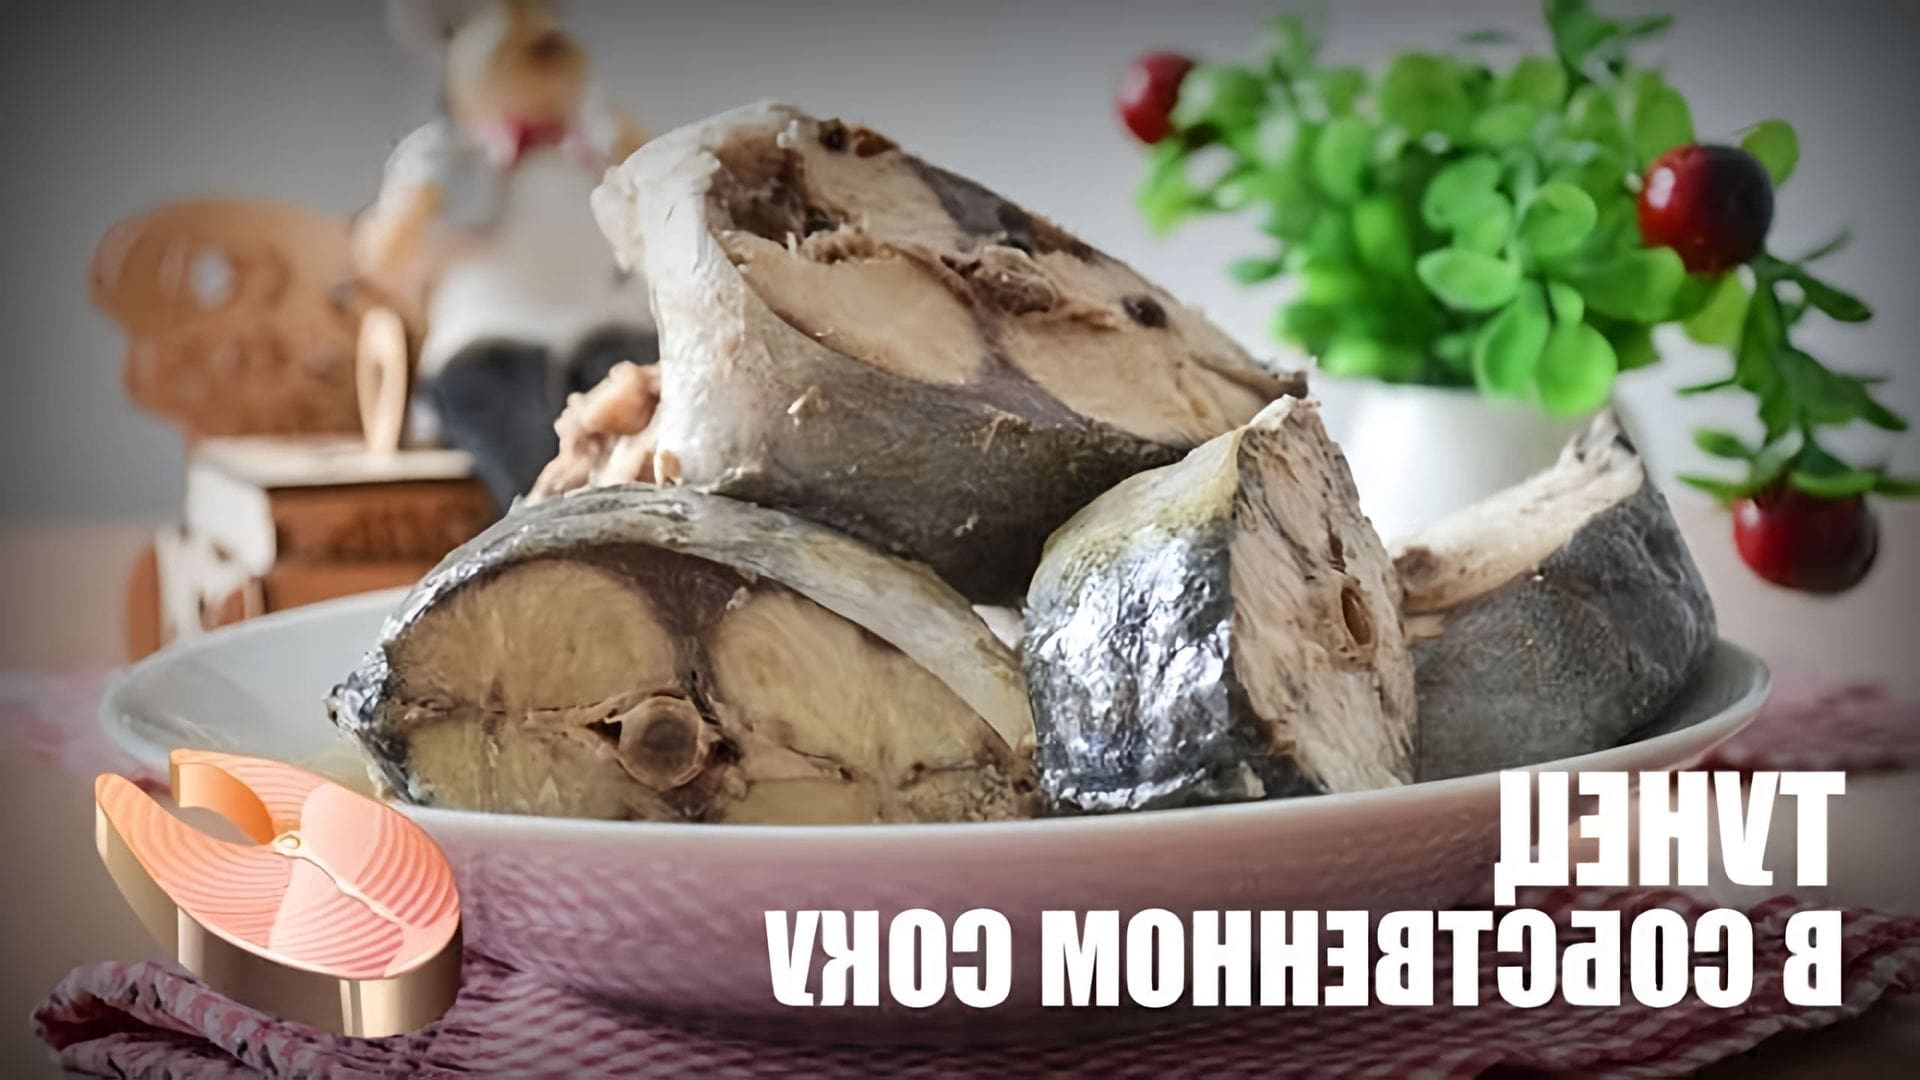 В этом видео представлен рецепт приготовления тунца в собственном соку